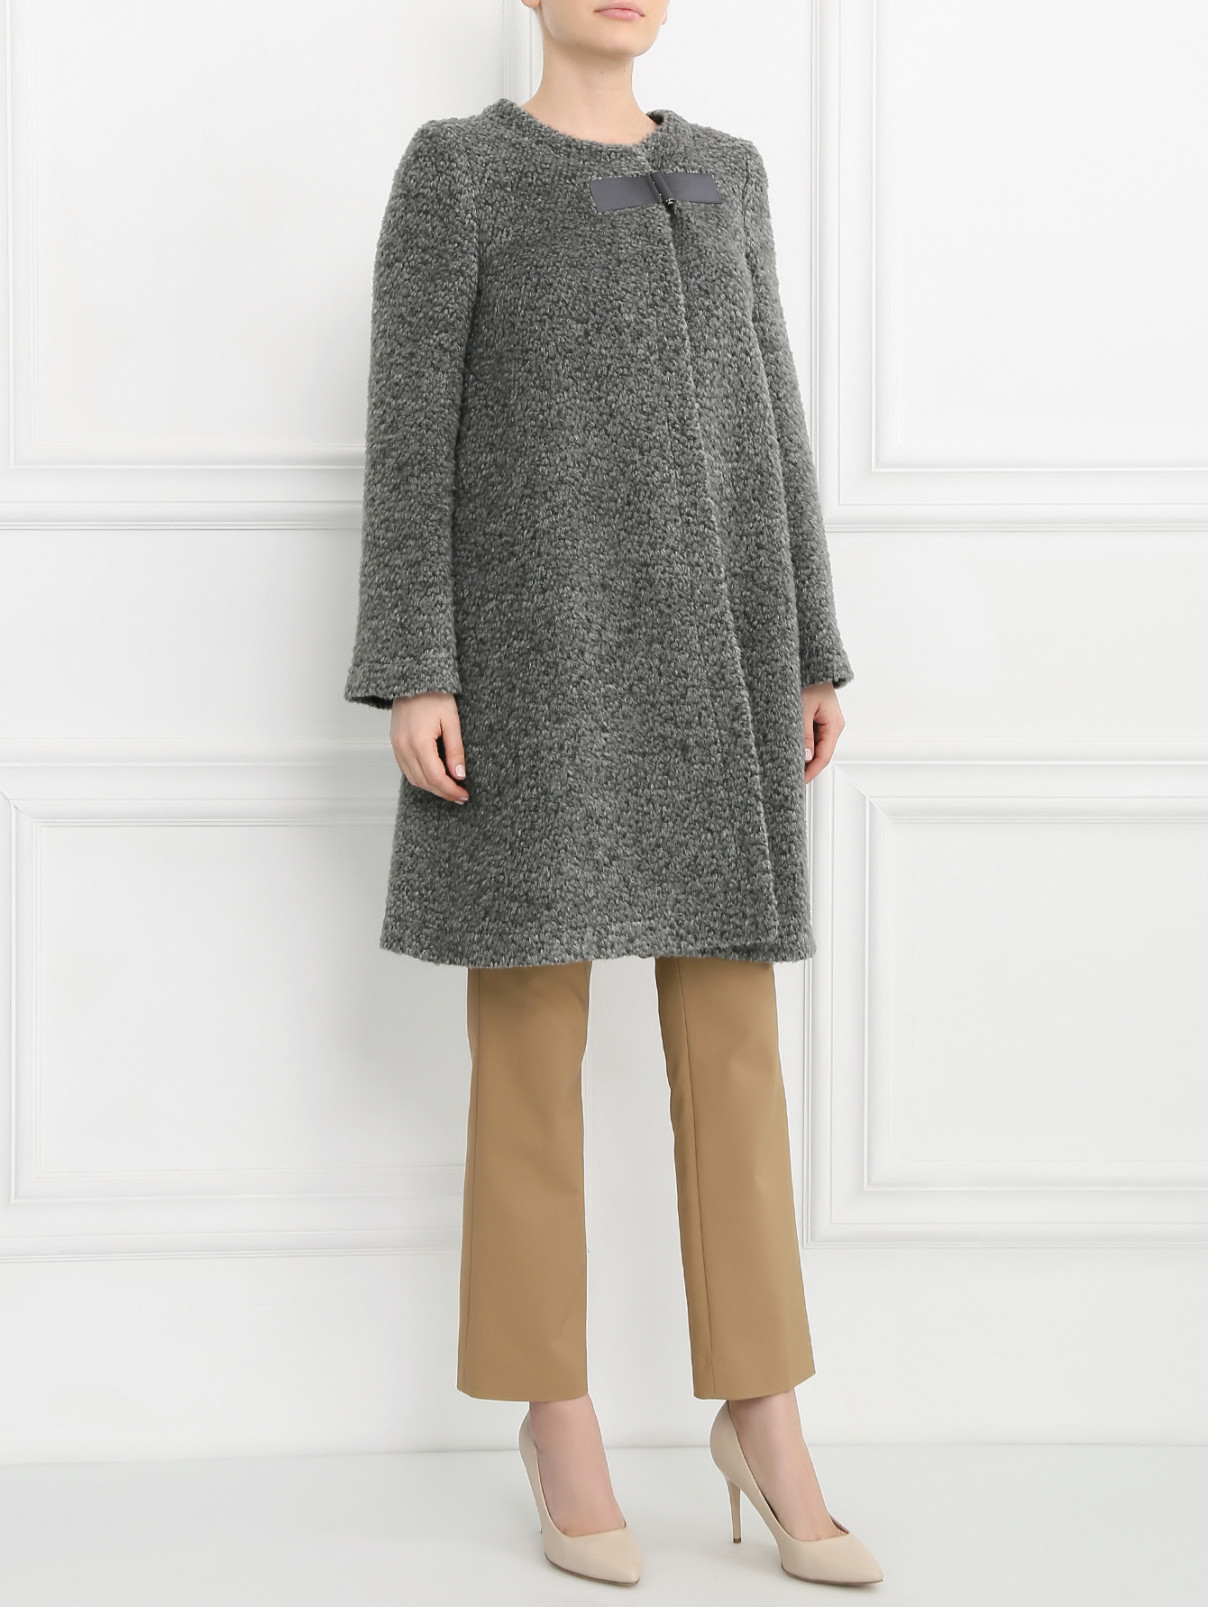 Пальто из шерсти Armani Collezioni  –  Модель Общий вид  – Цвет:  Серый